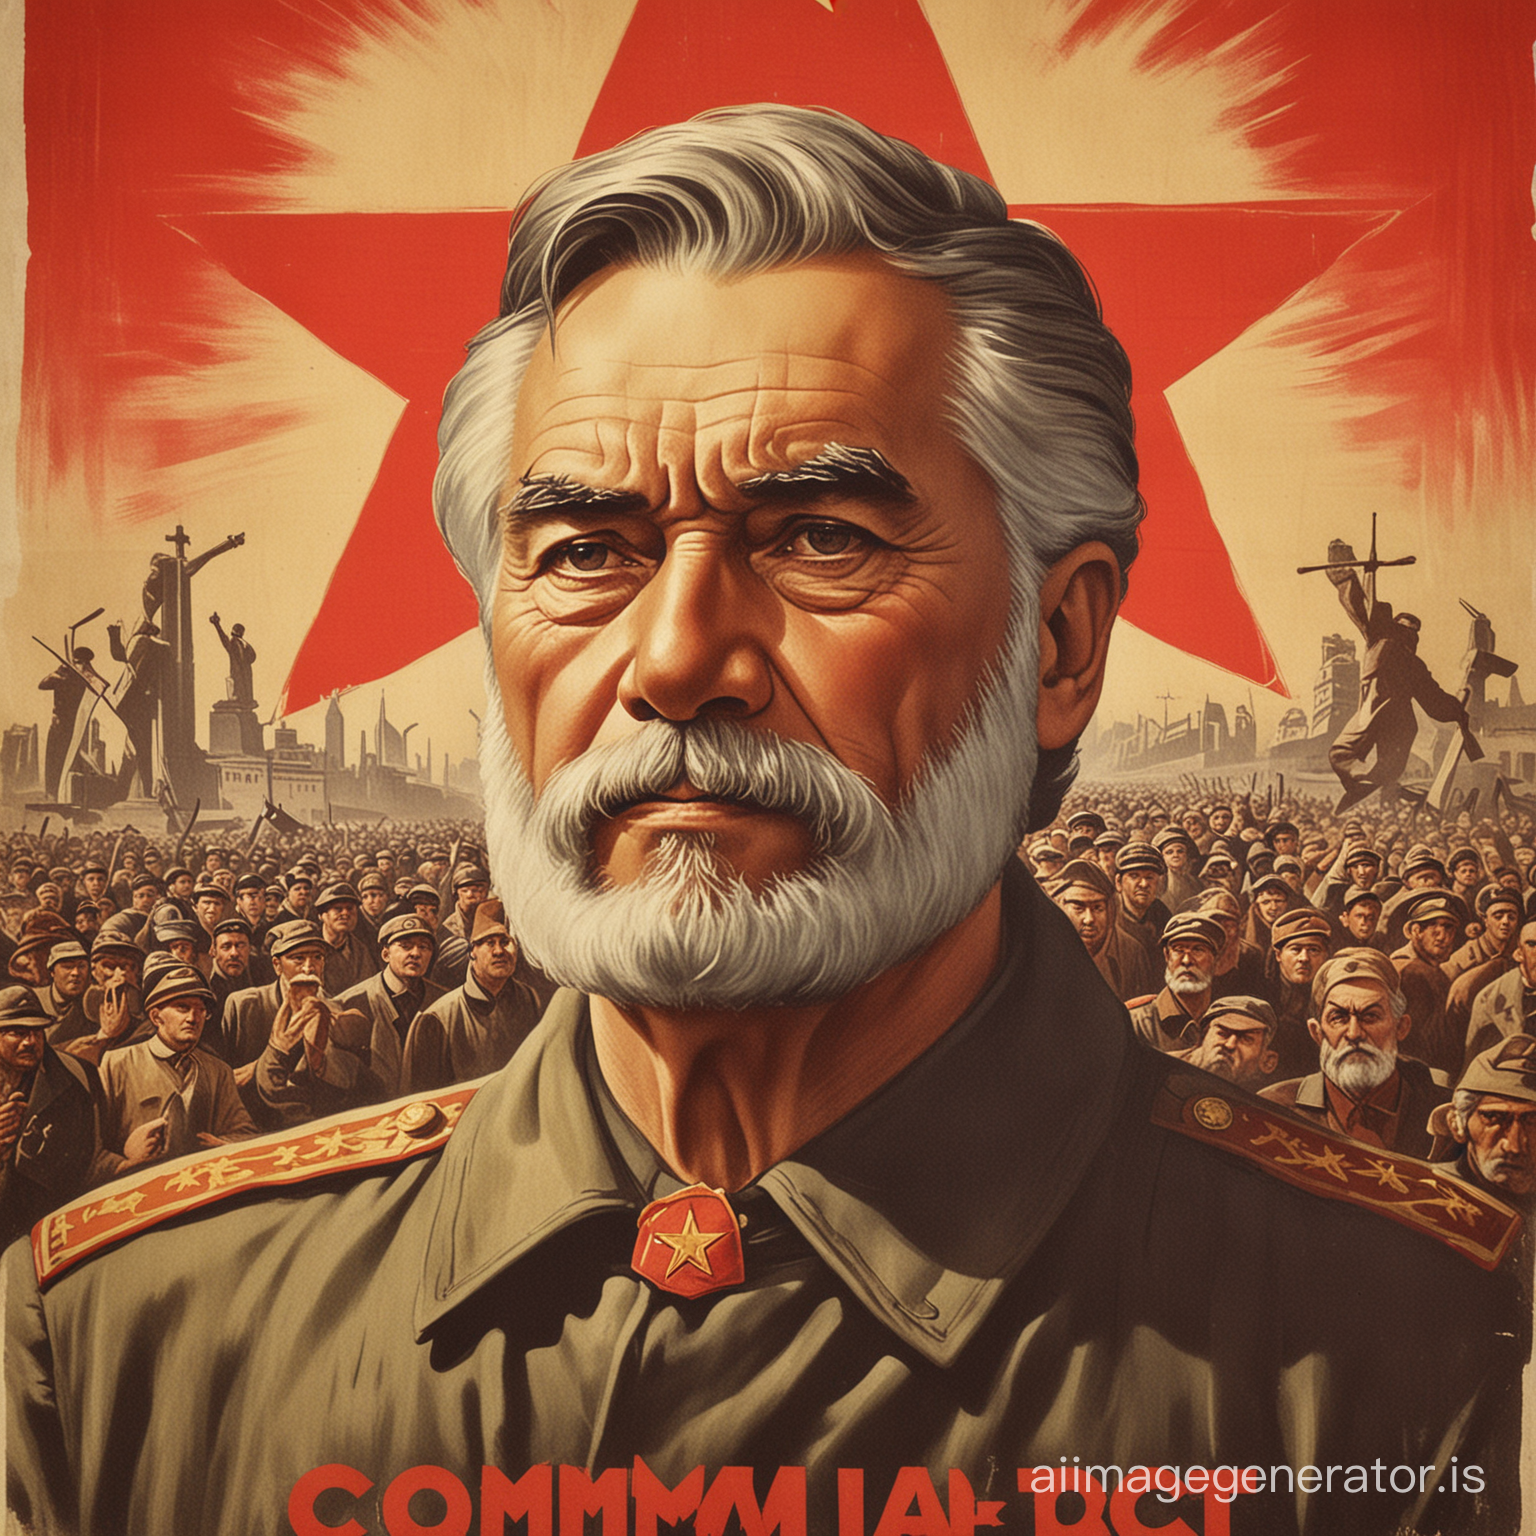 Communist old poster